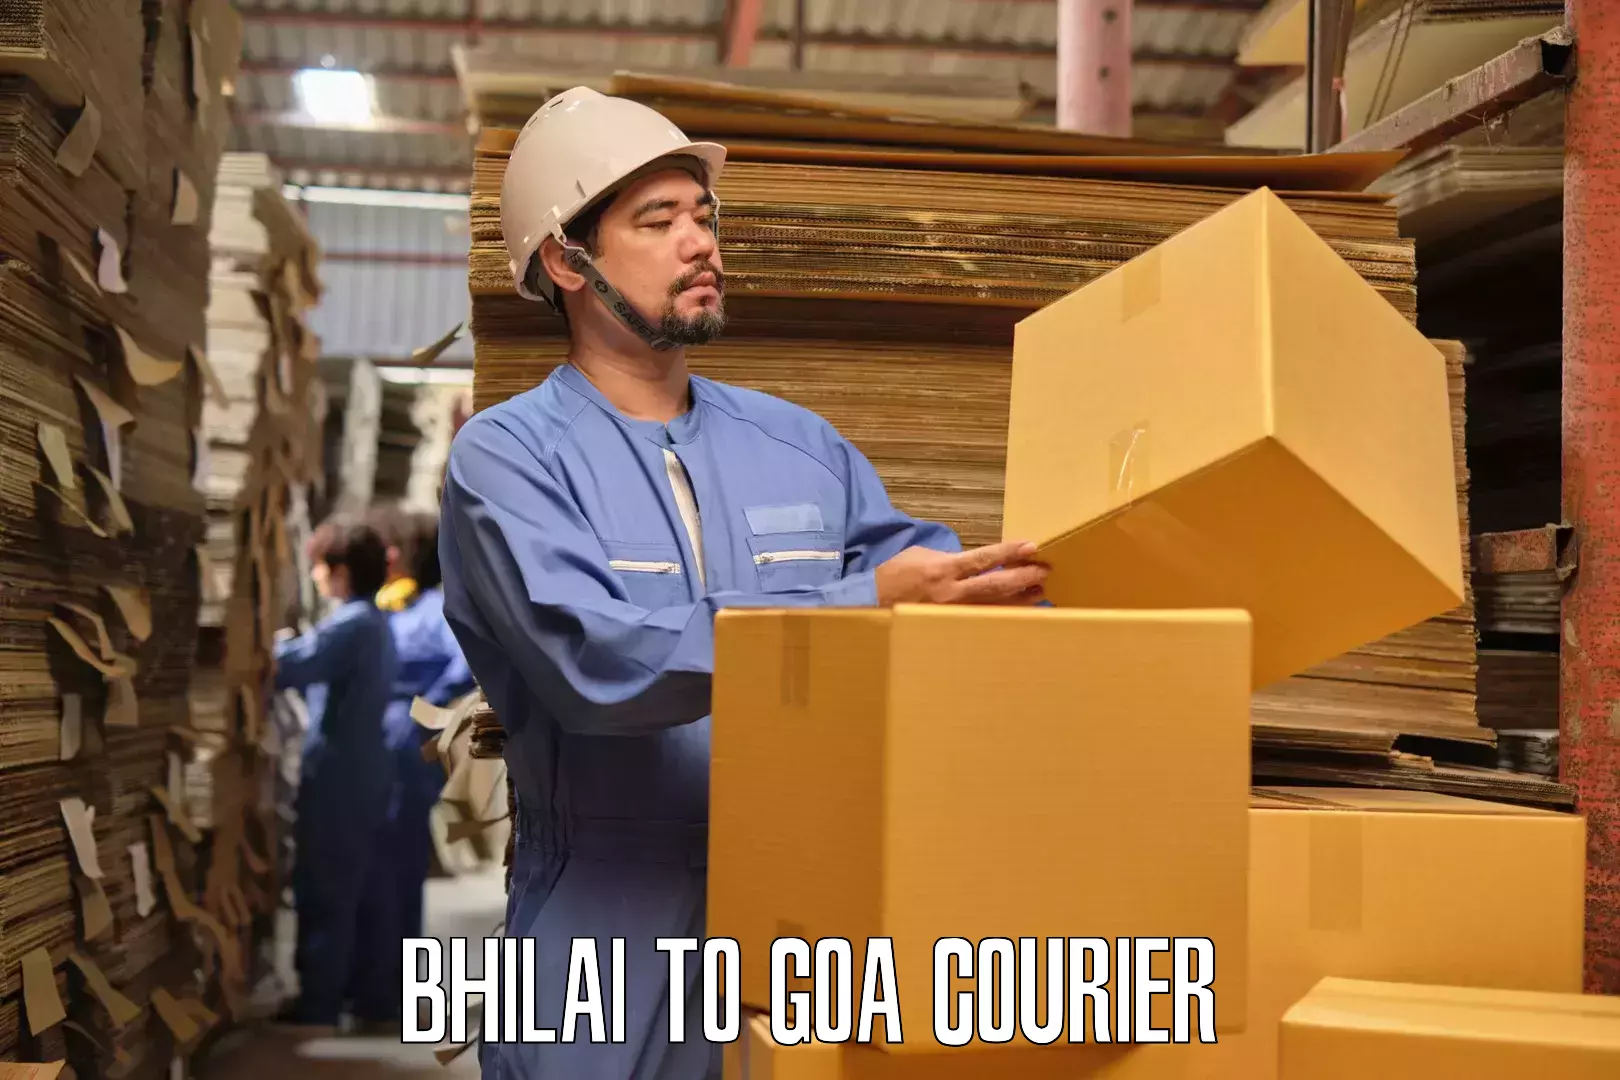 Household logistics services Bhilai to Ponda